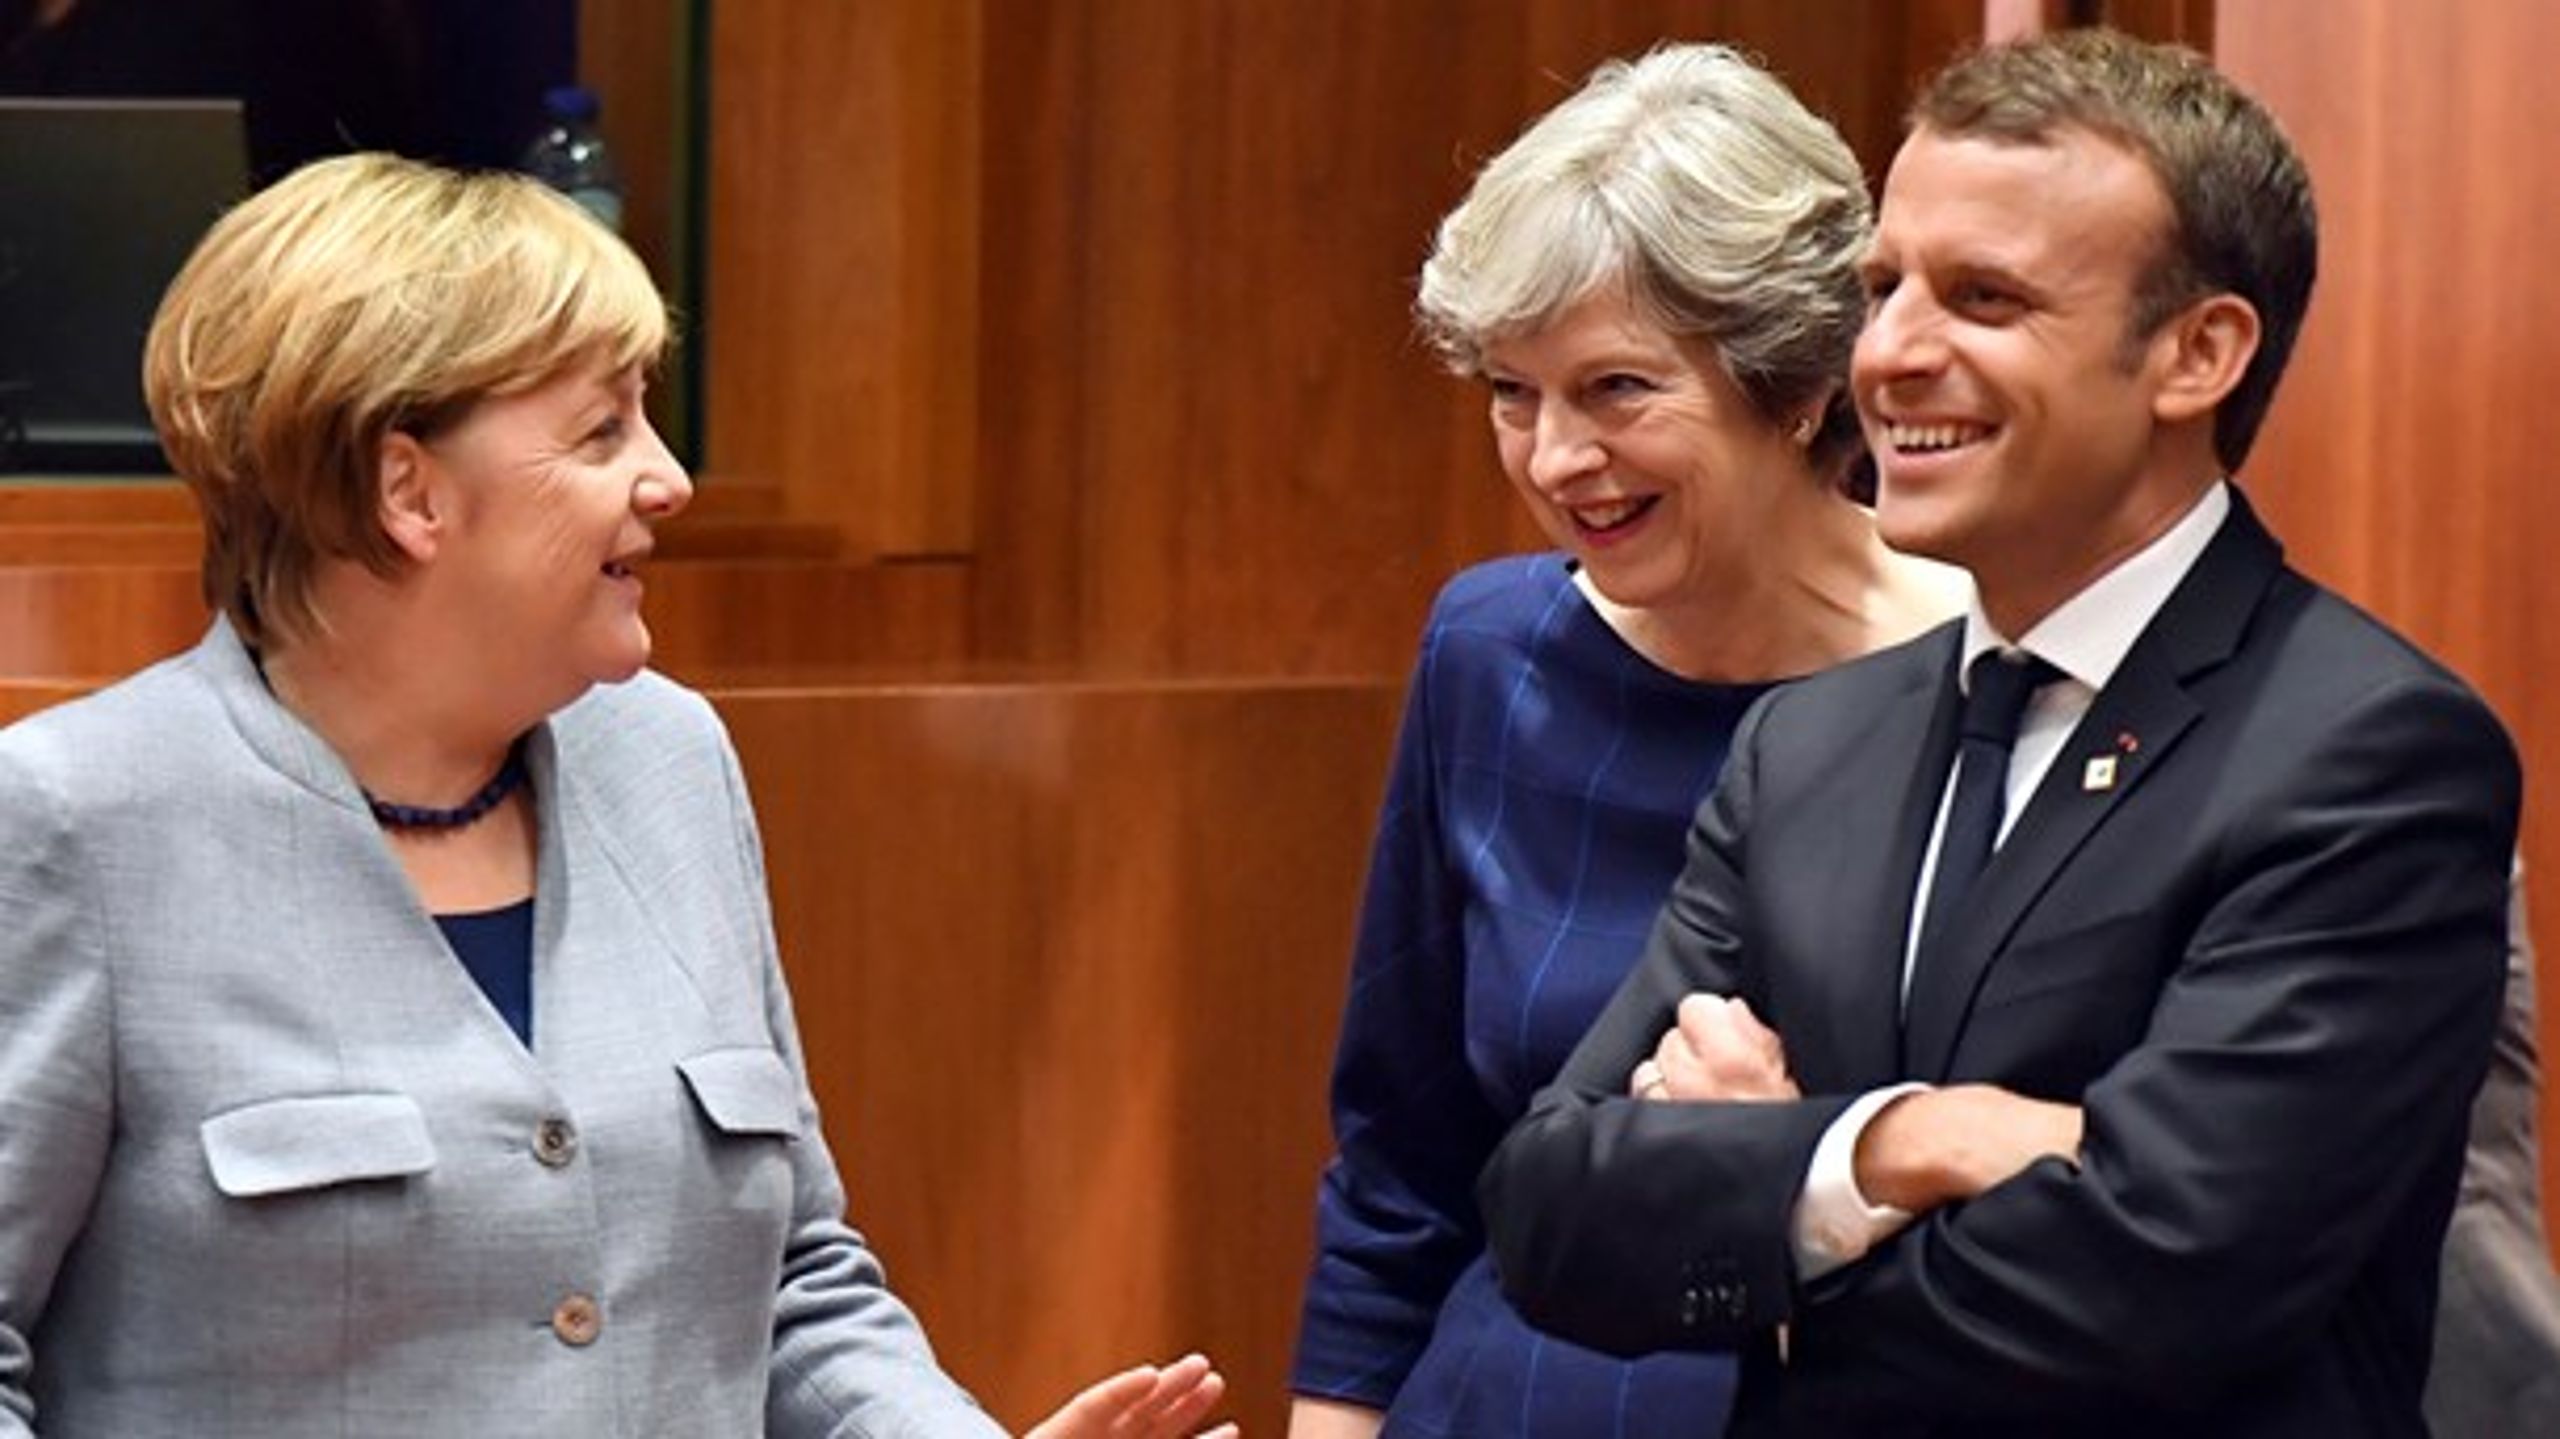 EU-topmødet havde i denne omgang stort fokus på fremdriften i Brexit-forhandlingerne mellem EU og Storbritannien.